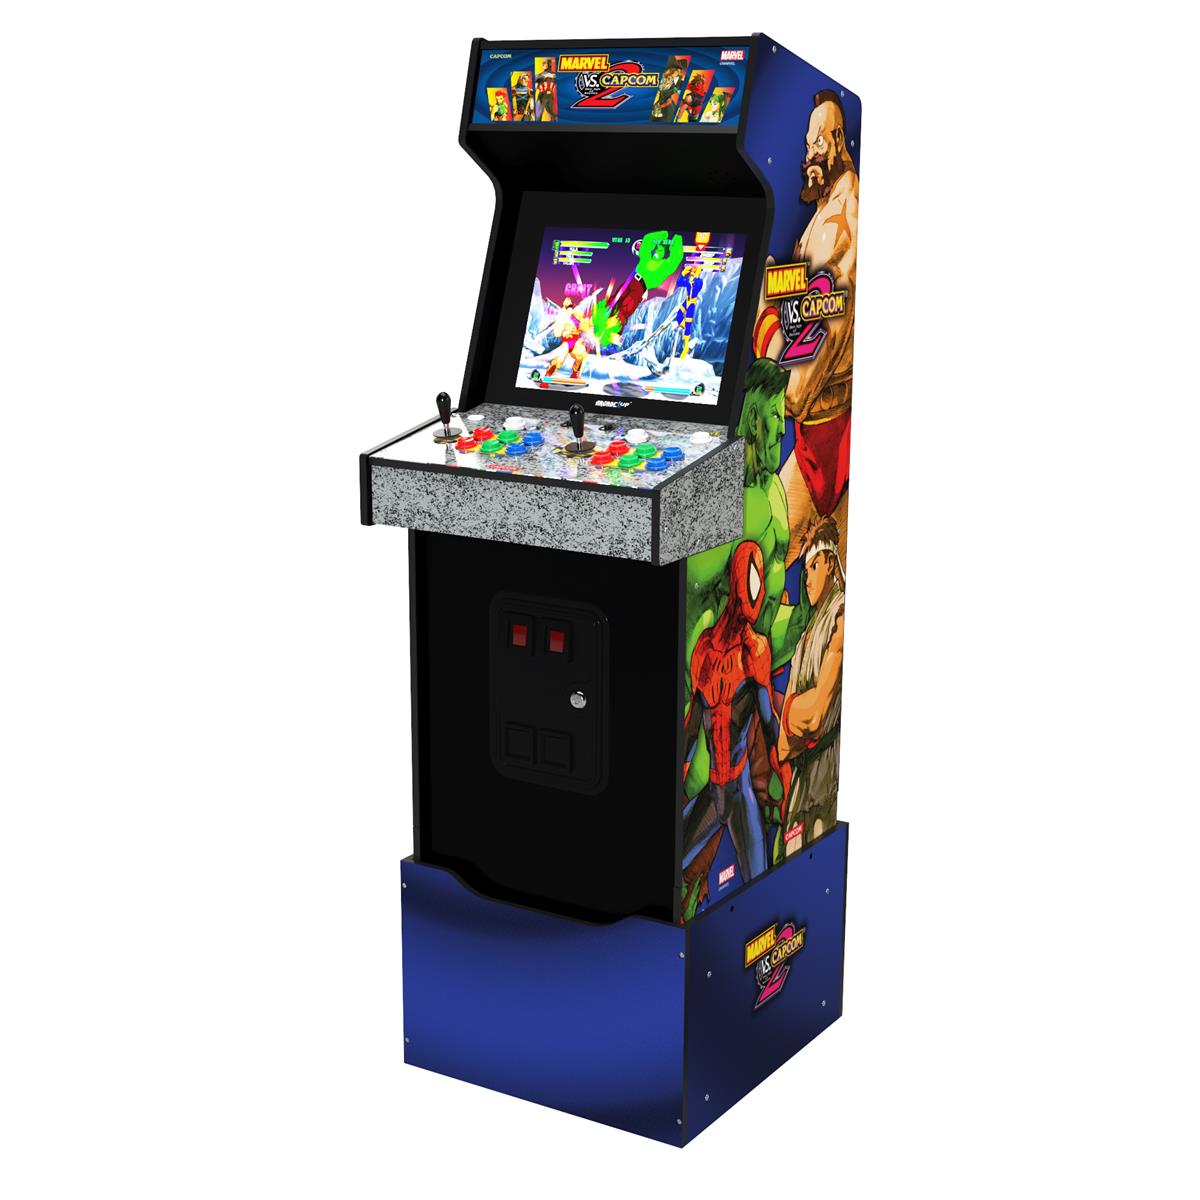 Image of Arcade1Up Marvel vs Capcom 2 Arcade Game Machine with Riser